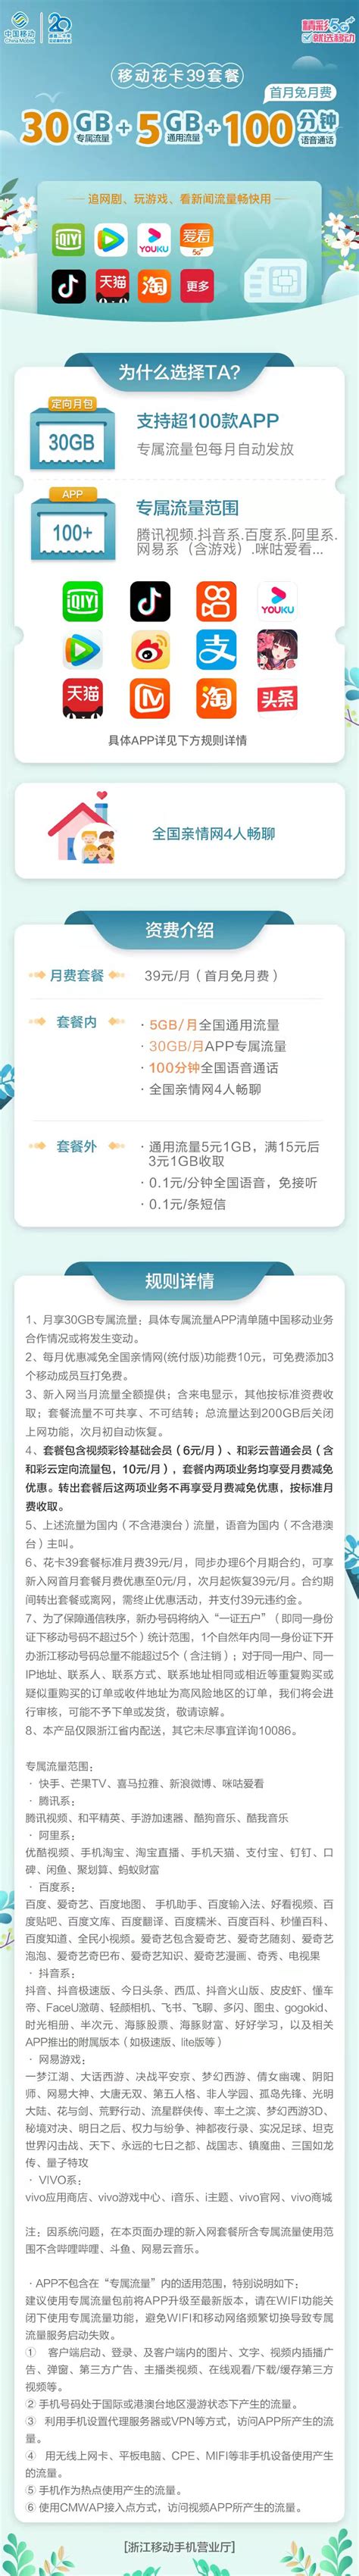 台州银行官方下载-台州银行 app 最新版本免费下载-应用宝官网